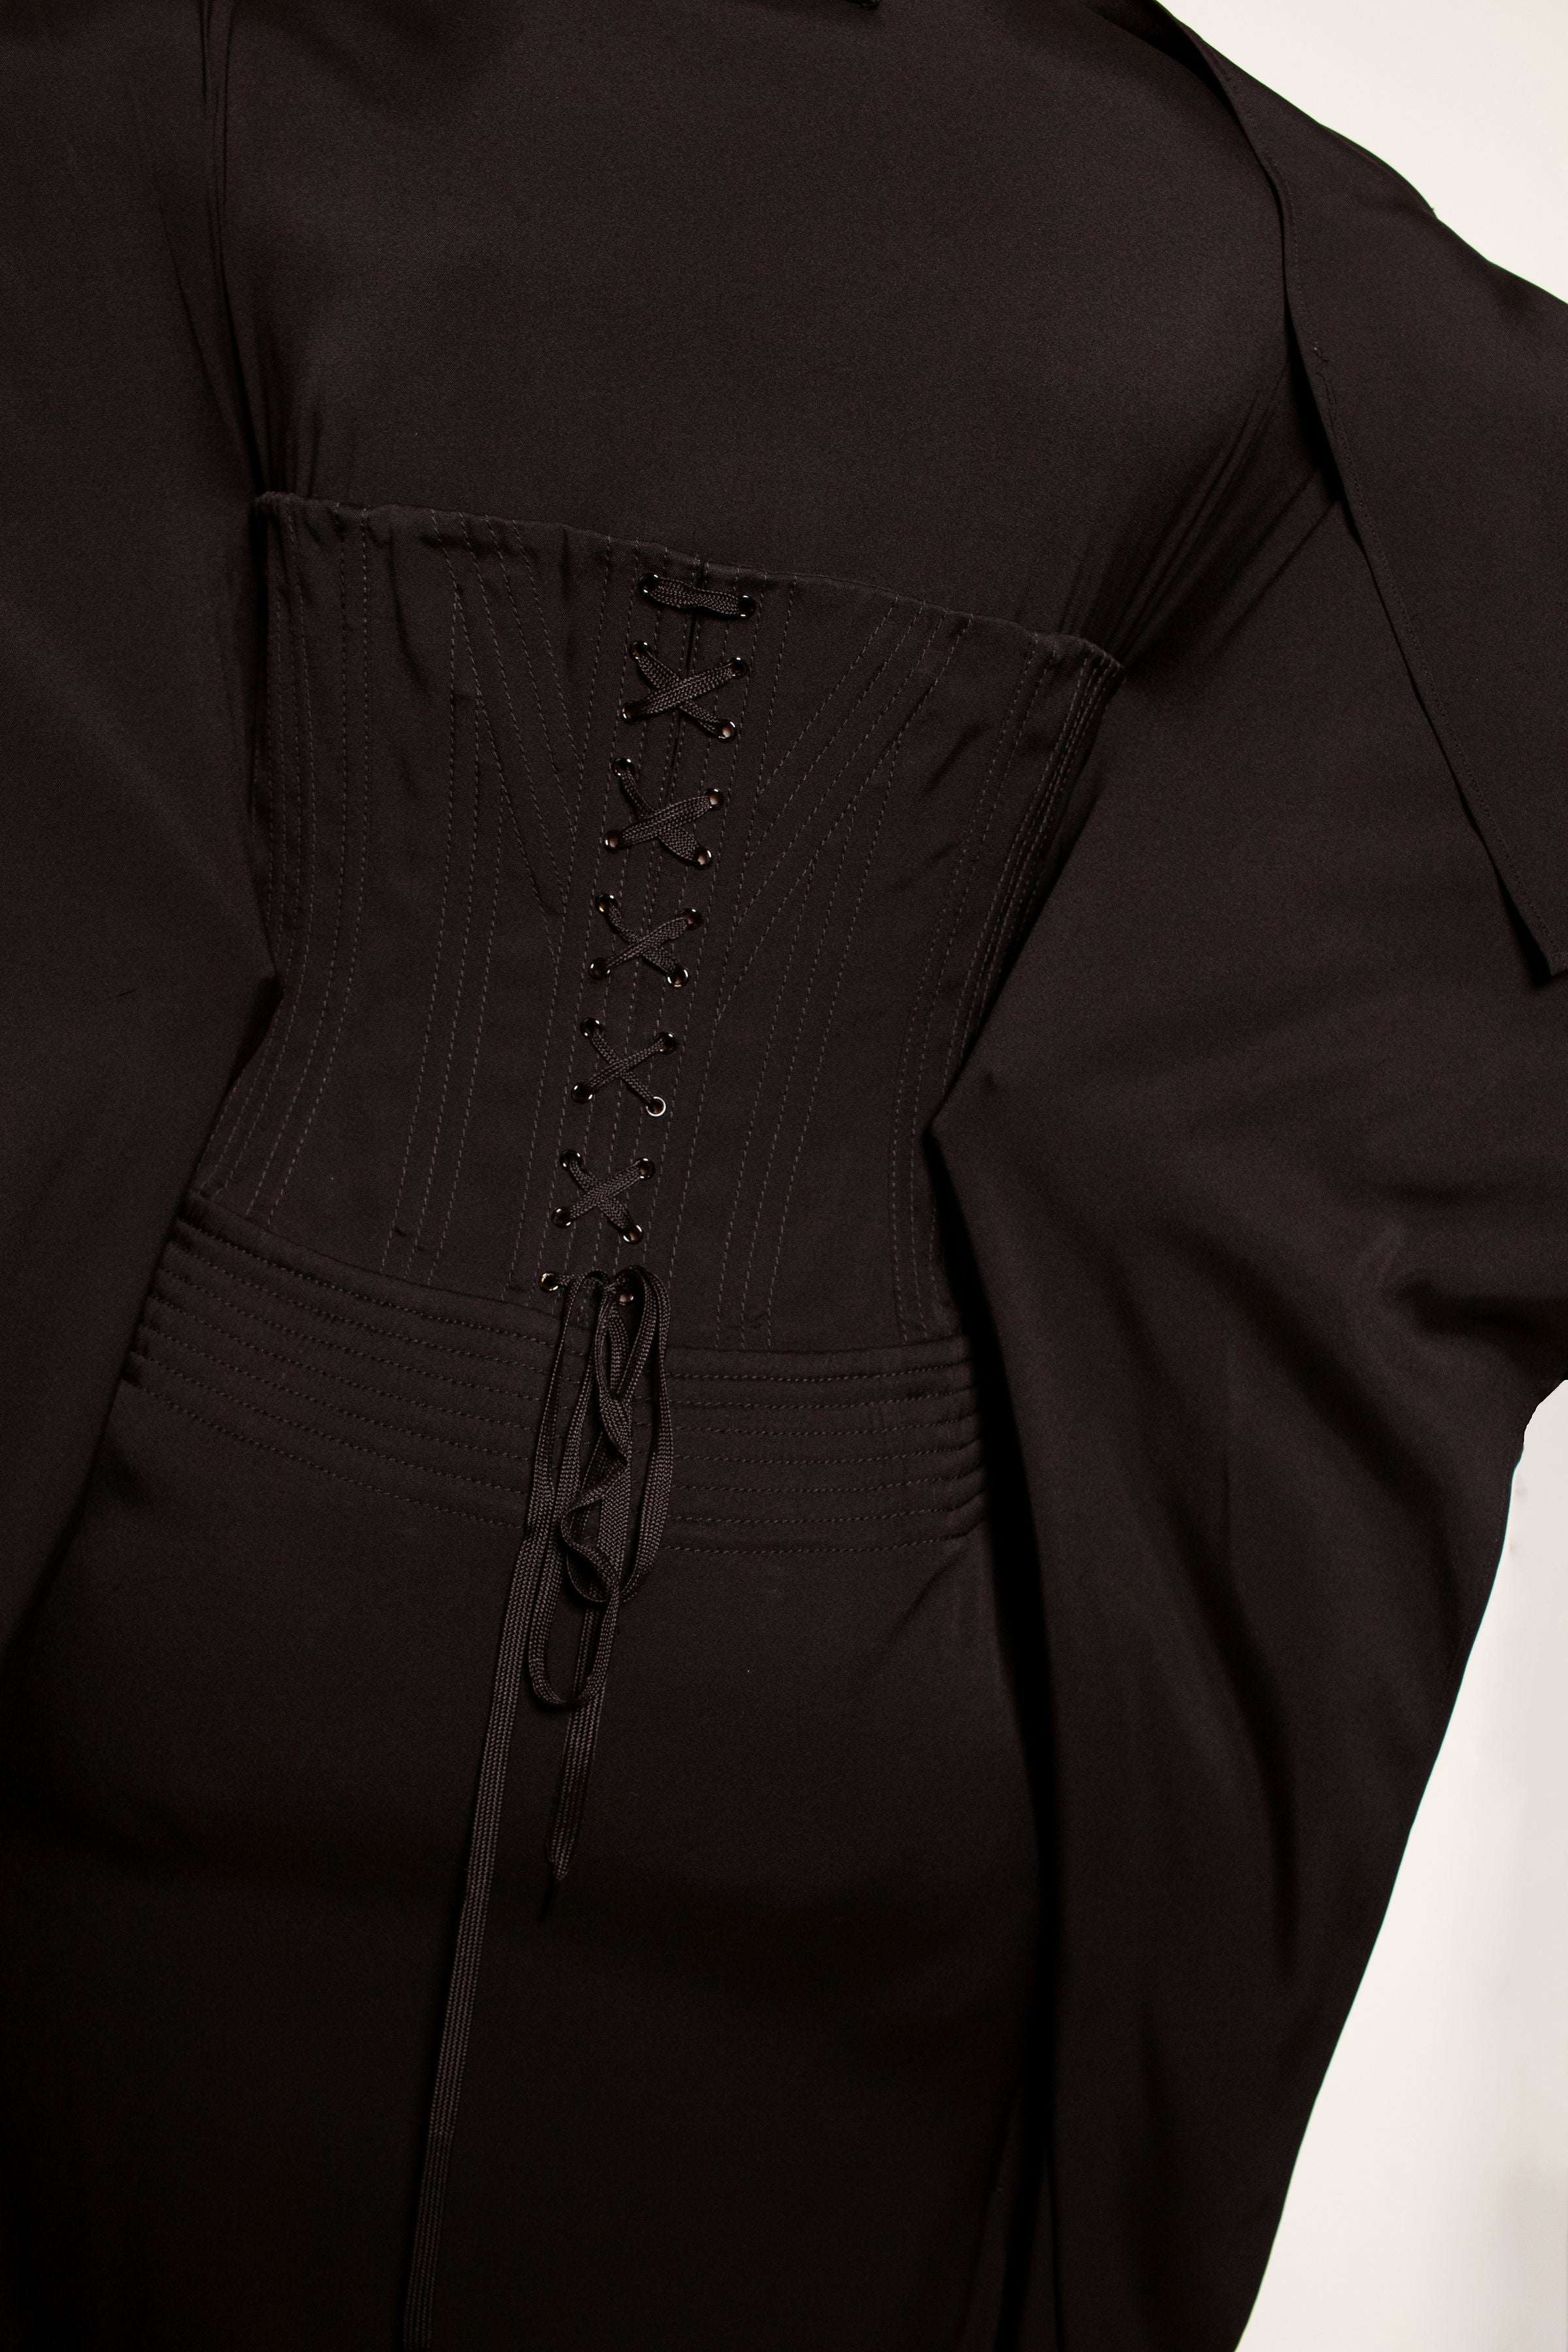 Jean Paul Gaultier F/W 2010 Black Cone Bra Corset Dress